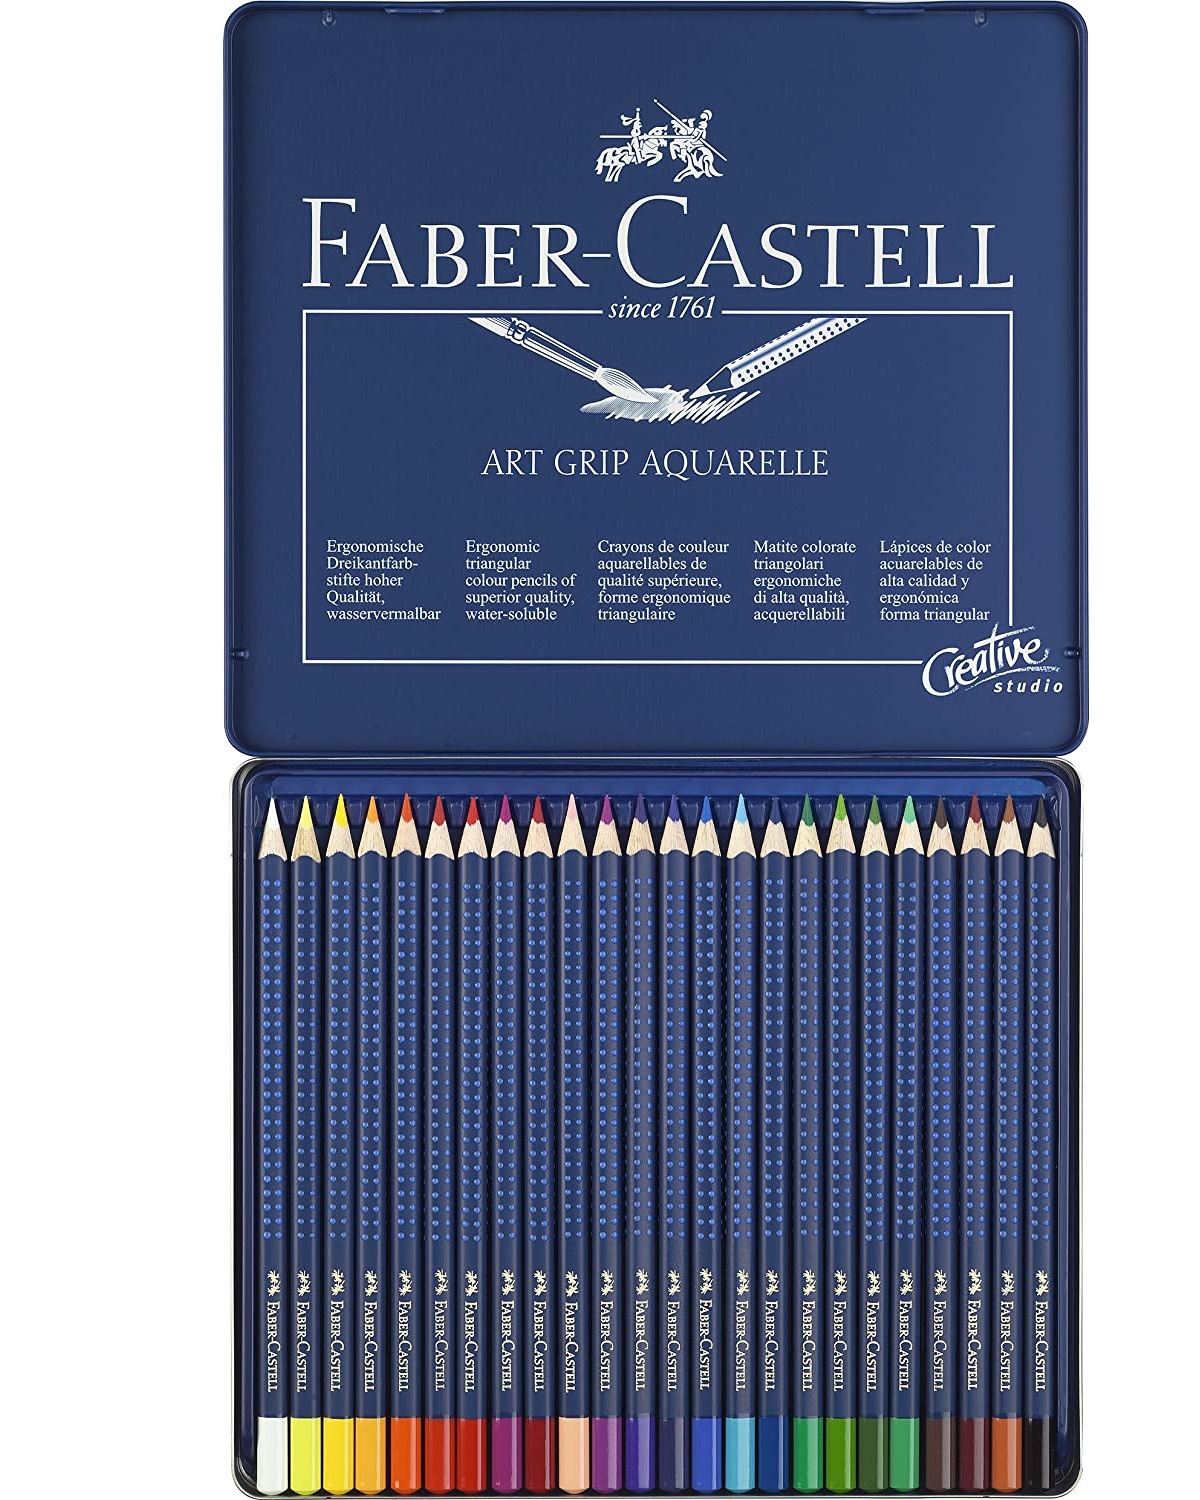 114224 FABER-CASTELL                                                | LAPICES ART GRIP ACUARELABLES POR 24 COLORES                                                                                                                                                                                                    